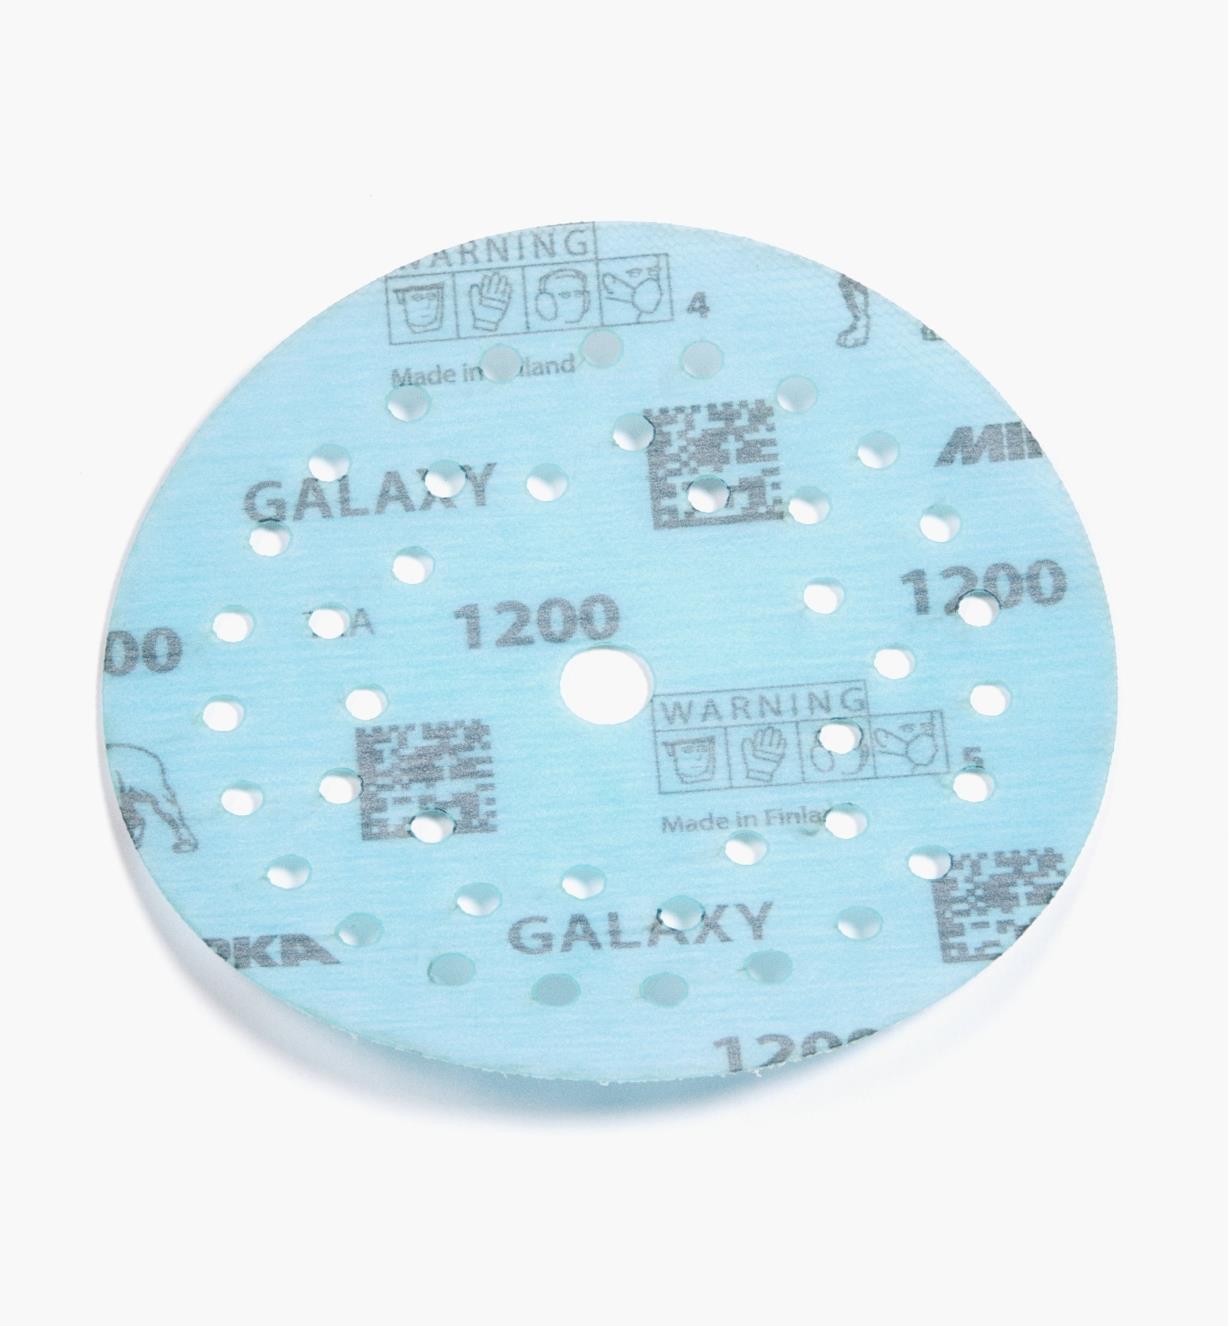 08K1355 - Disque abrasif autoagrippant Galaxy Multifit, 5 po, grain 1200, l'unité